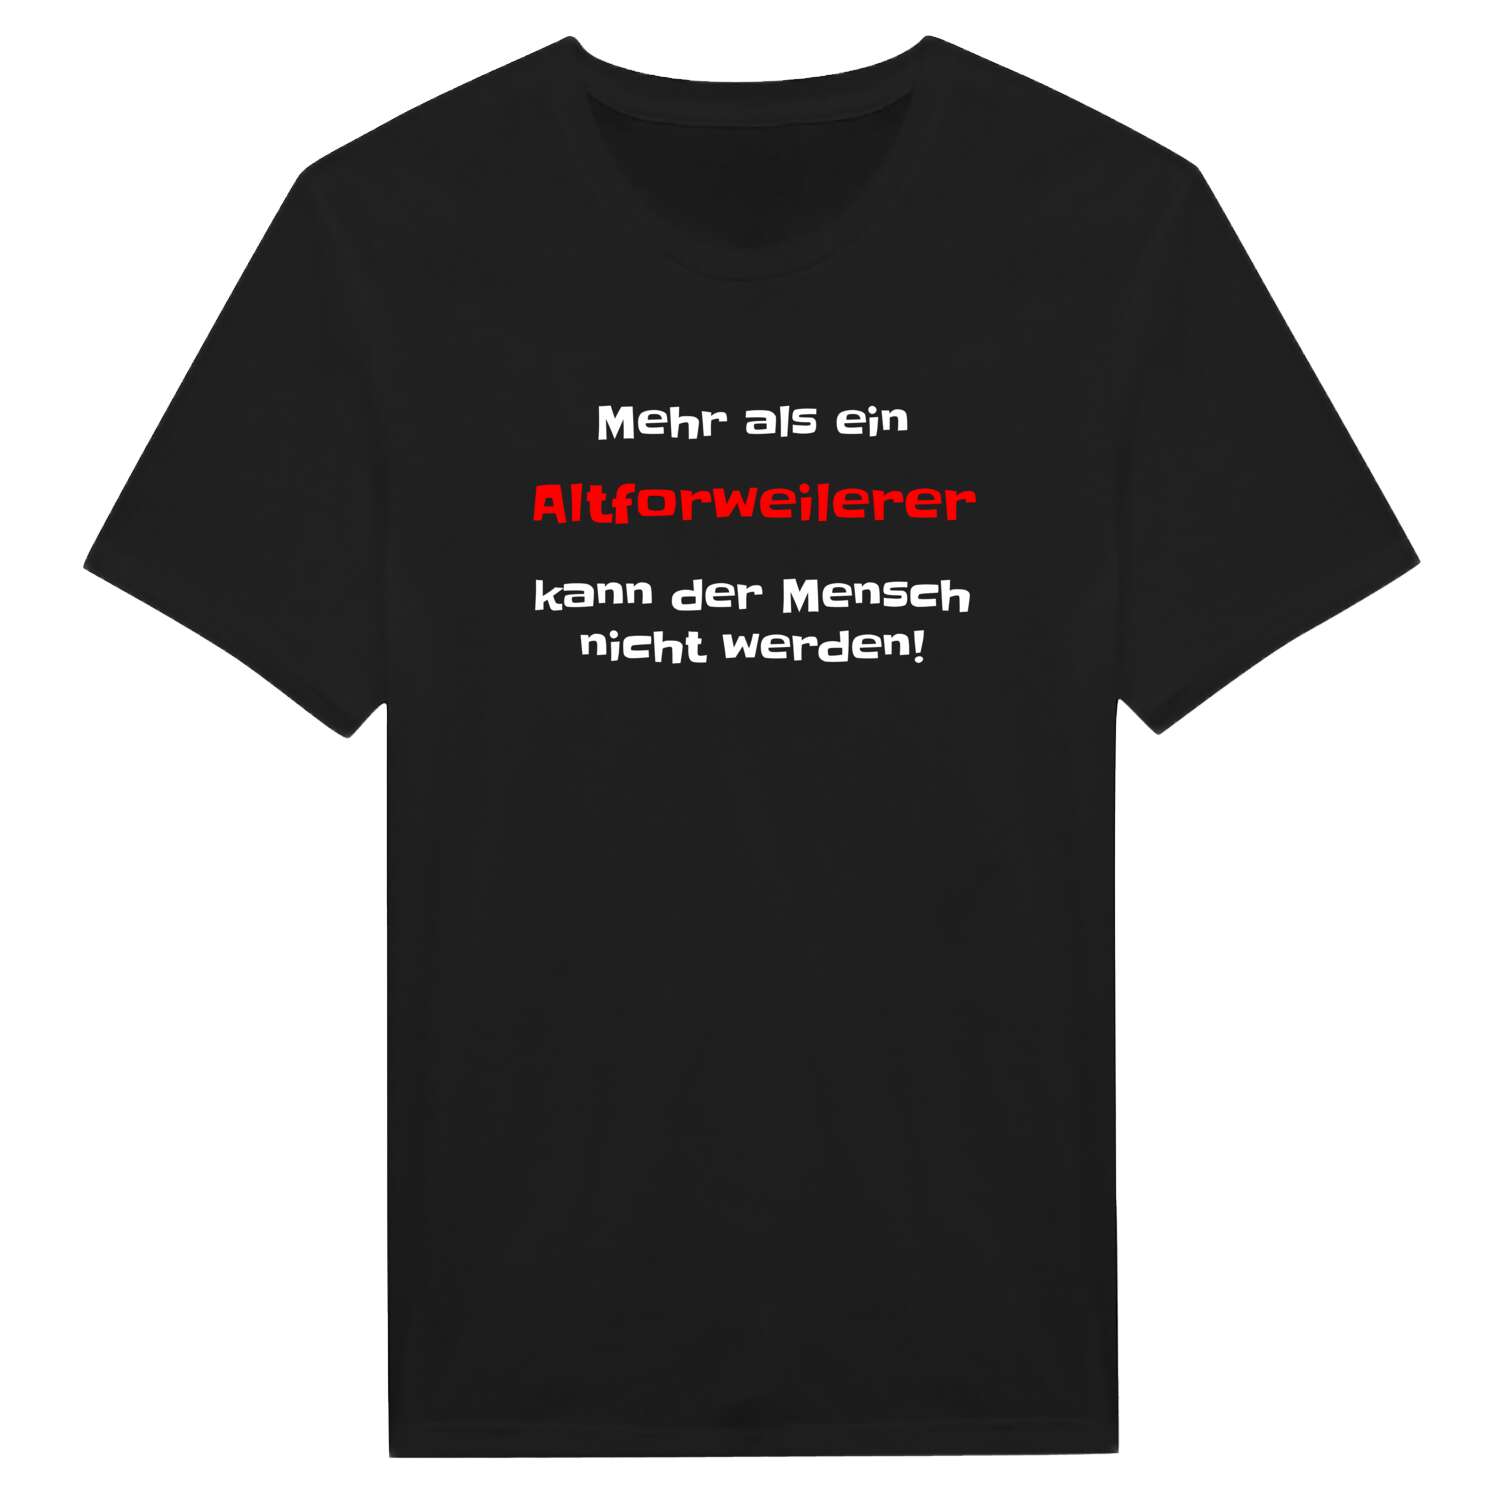 Altforweiler T-Shirt »Mehr als ein«